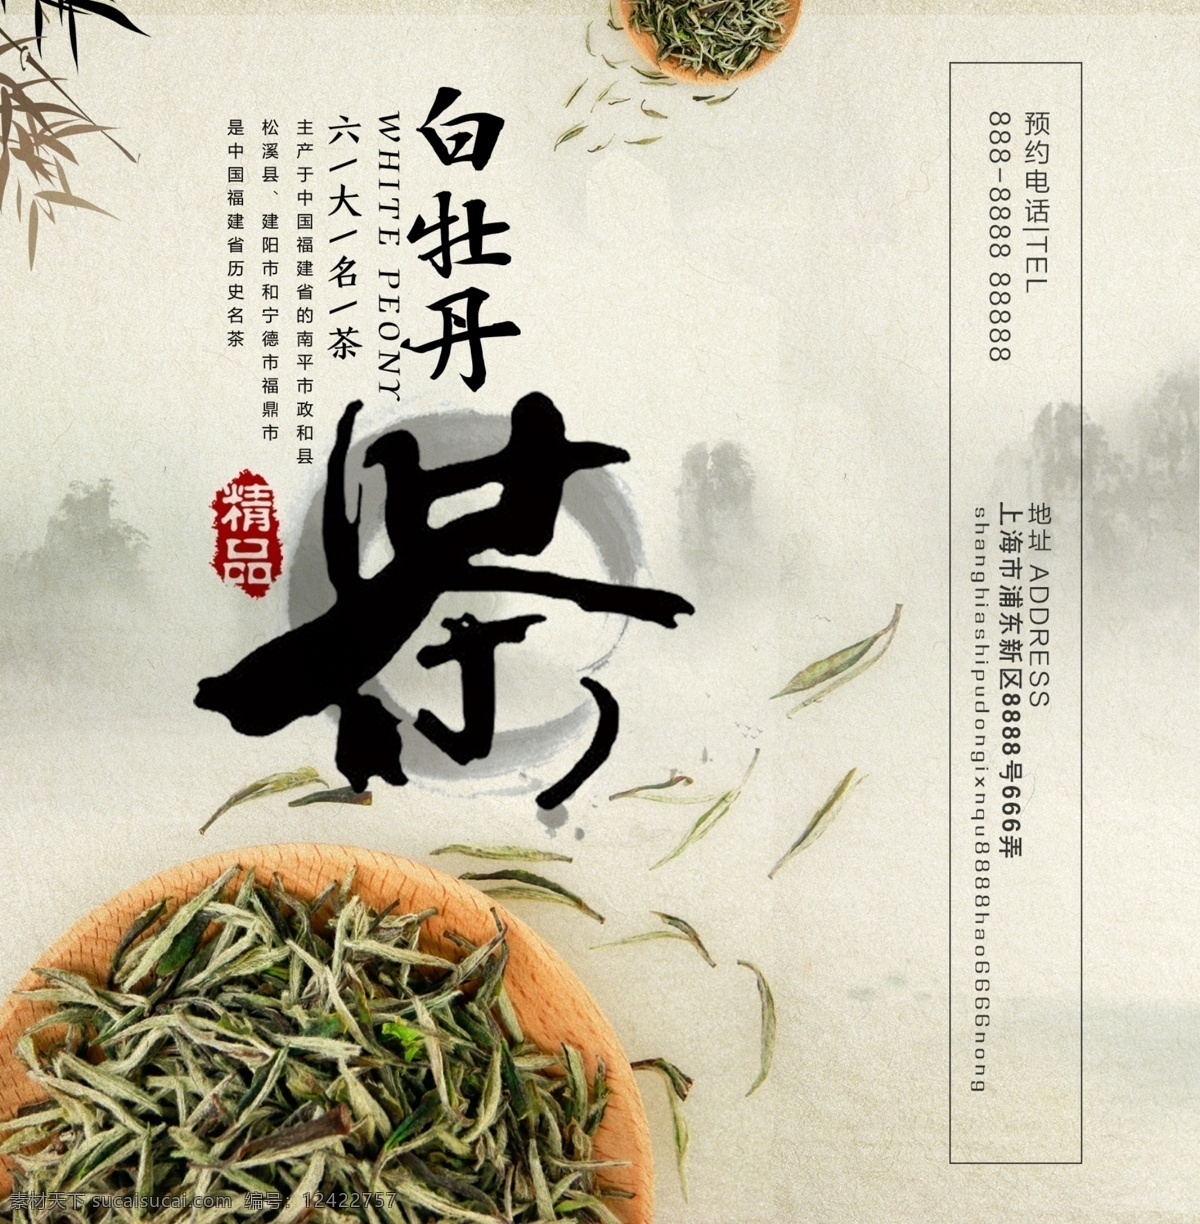 白牡丹茶 茶叶 大气 简约 礼品 新年 中国风 精品 手提袋 中国 风 牡丹 茶 礼品包装